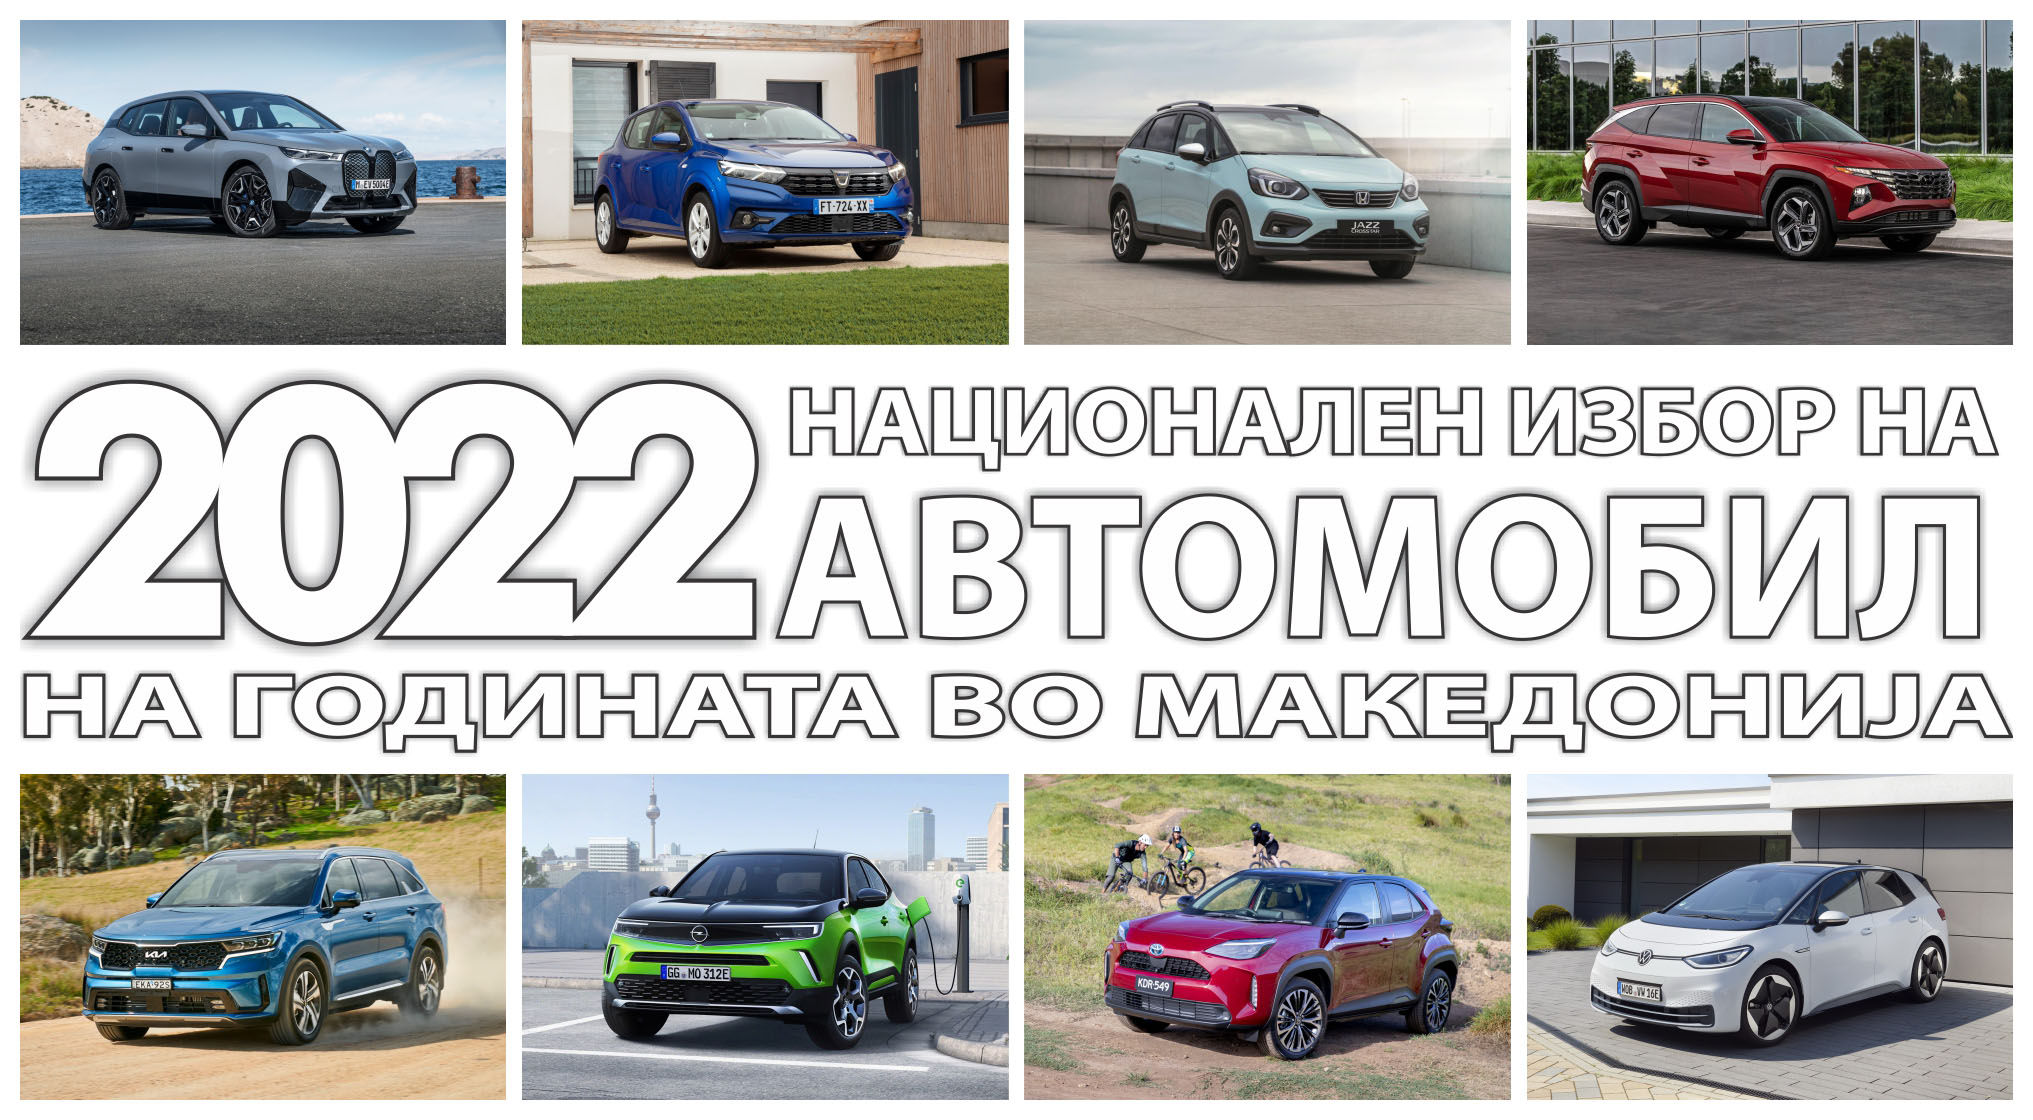 Објавени финалистите на националниот избор на автомобил на 2022 година во Македонија